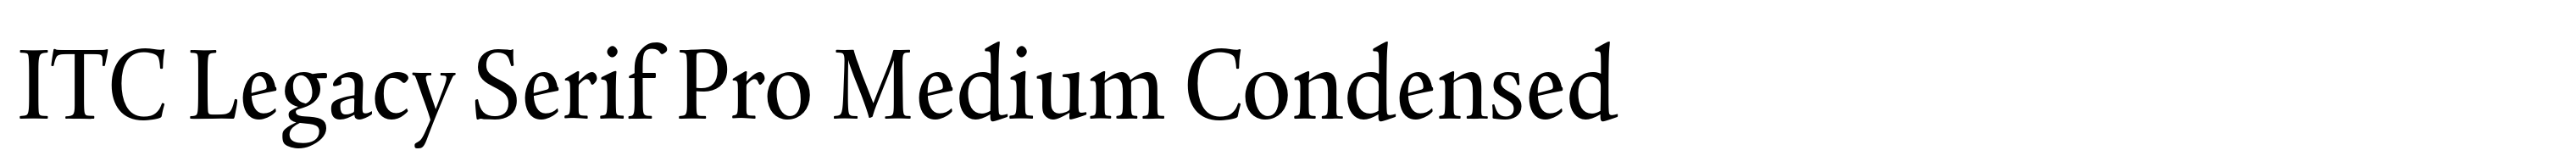 ITC Legacy Serif Pro Medium Condensed